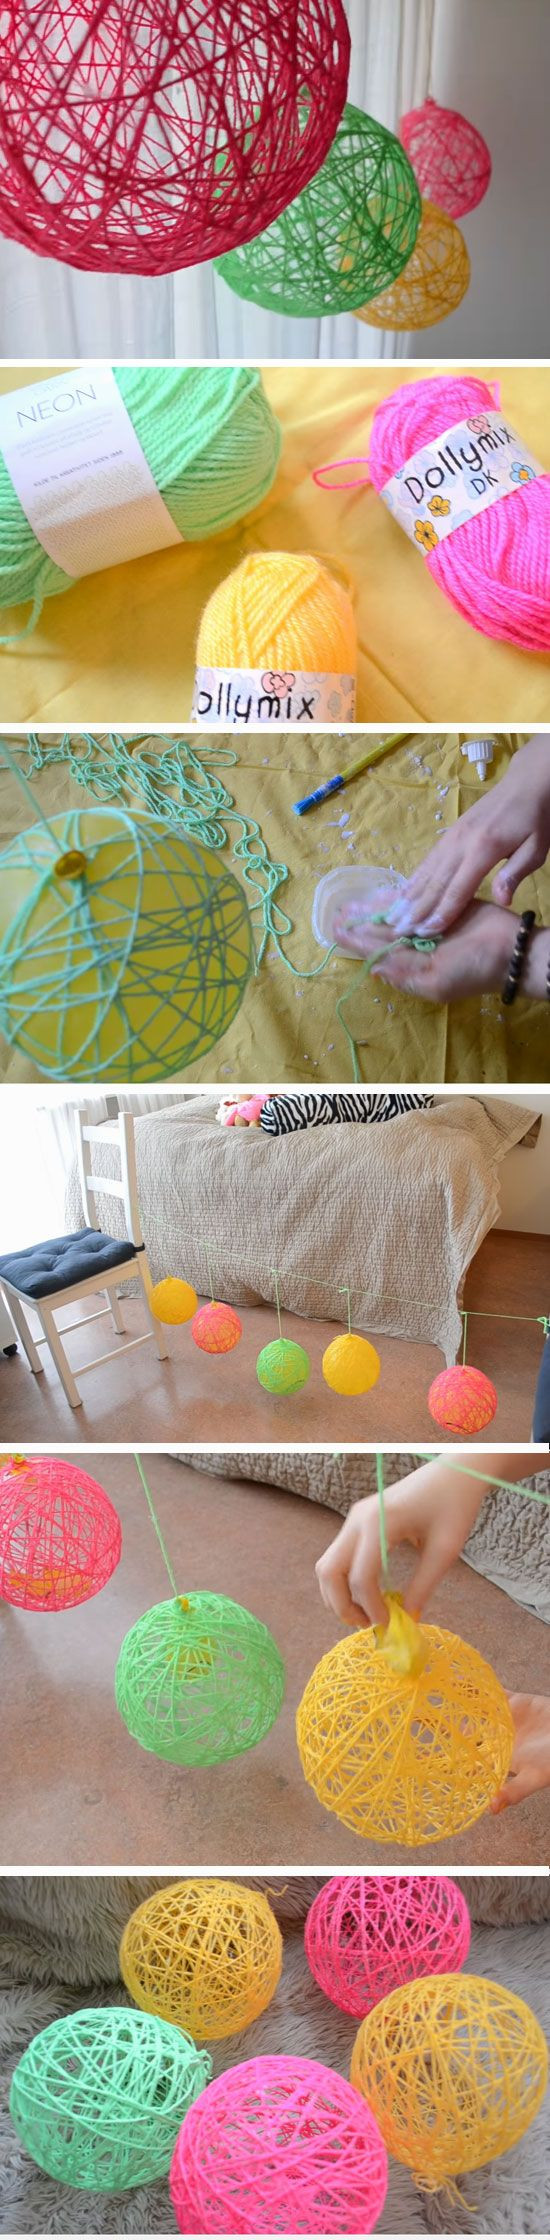 Spring Ideas For Teens
 Yarn Orbs DIY Spring Room Decor Ideas for Teens